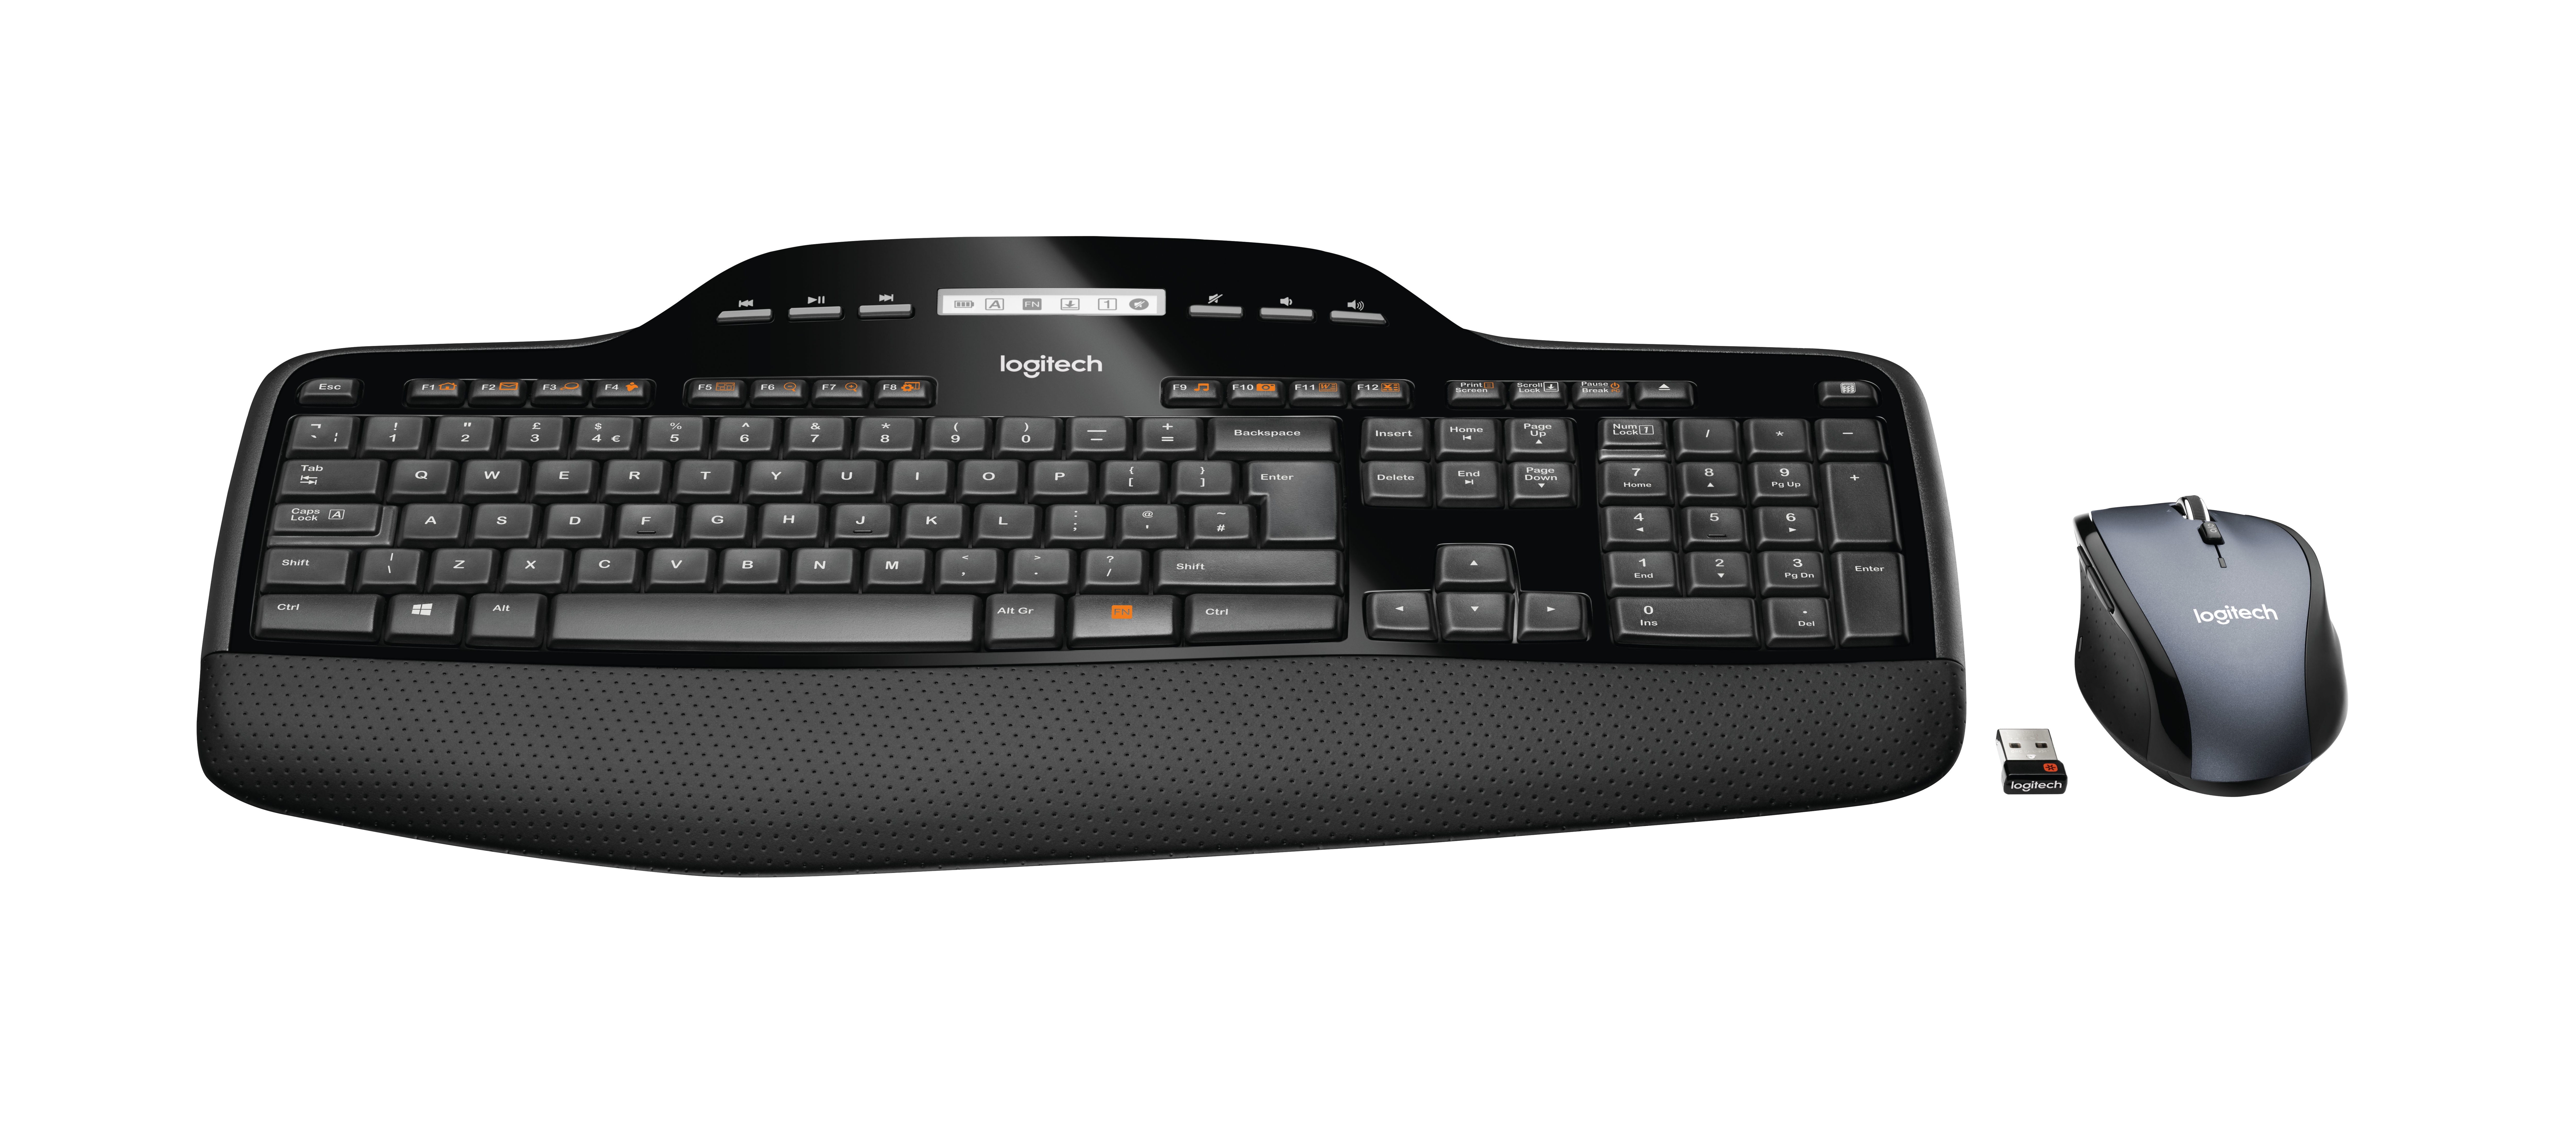 Mouse Desktop and Keyboard Logitech Set eBay ~D~ 920-002443 Wireless 5099206021167 | MK710